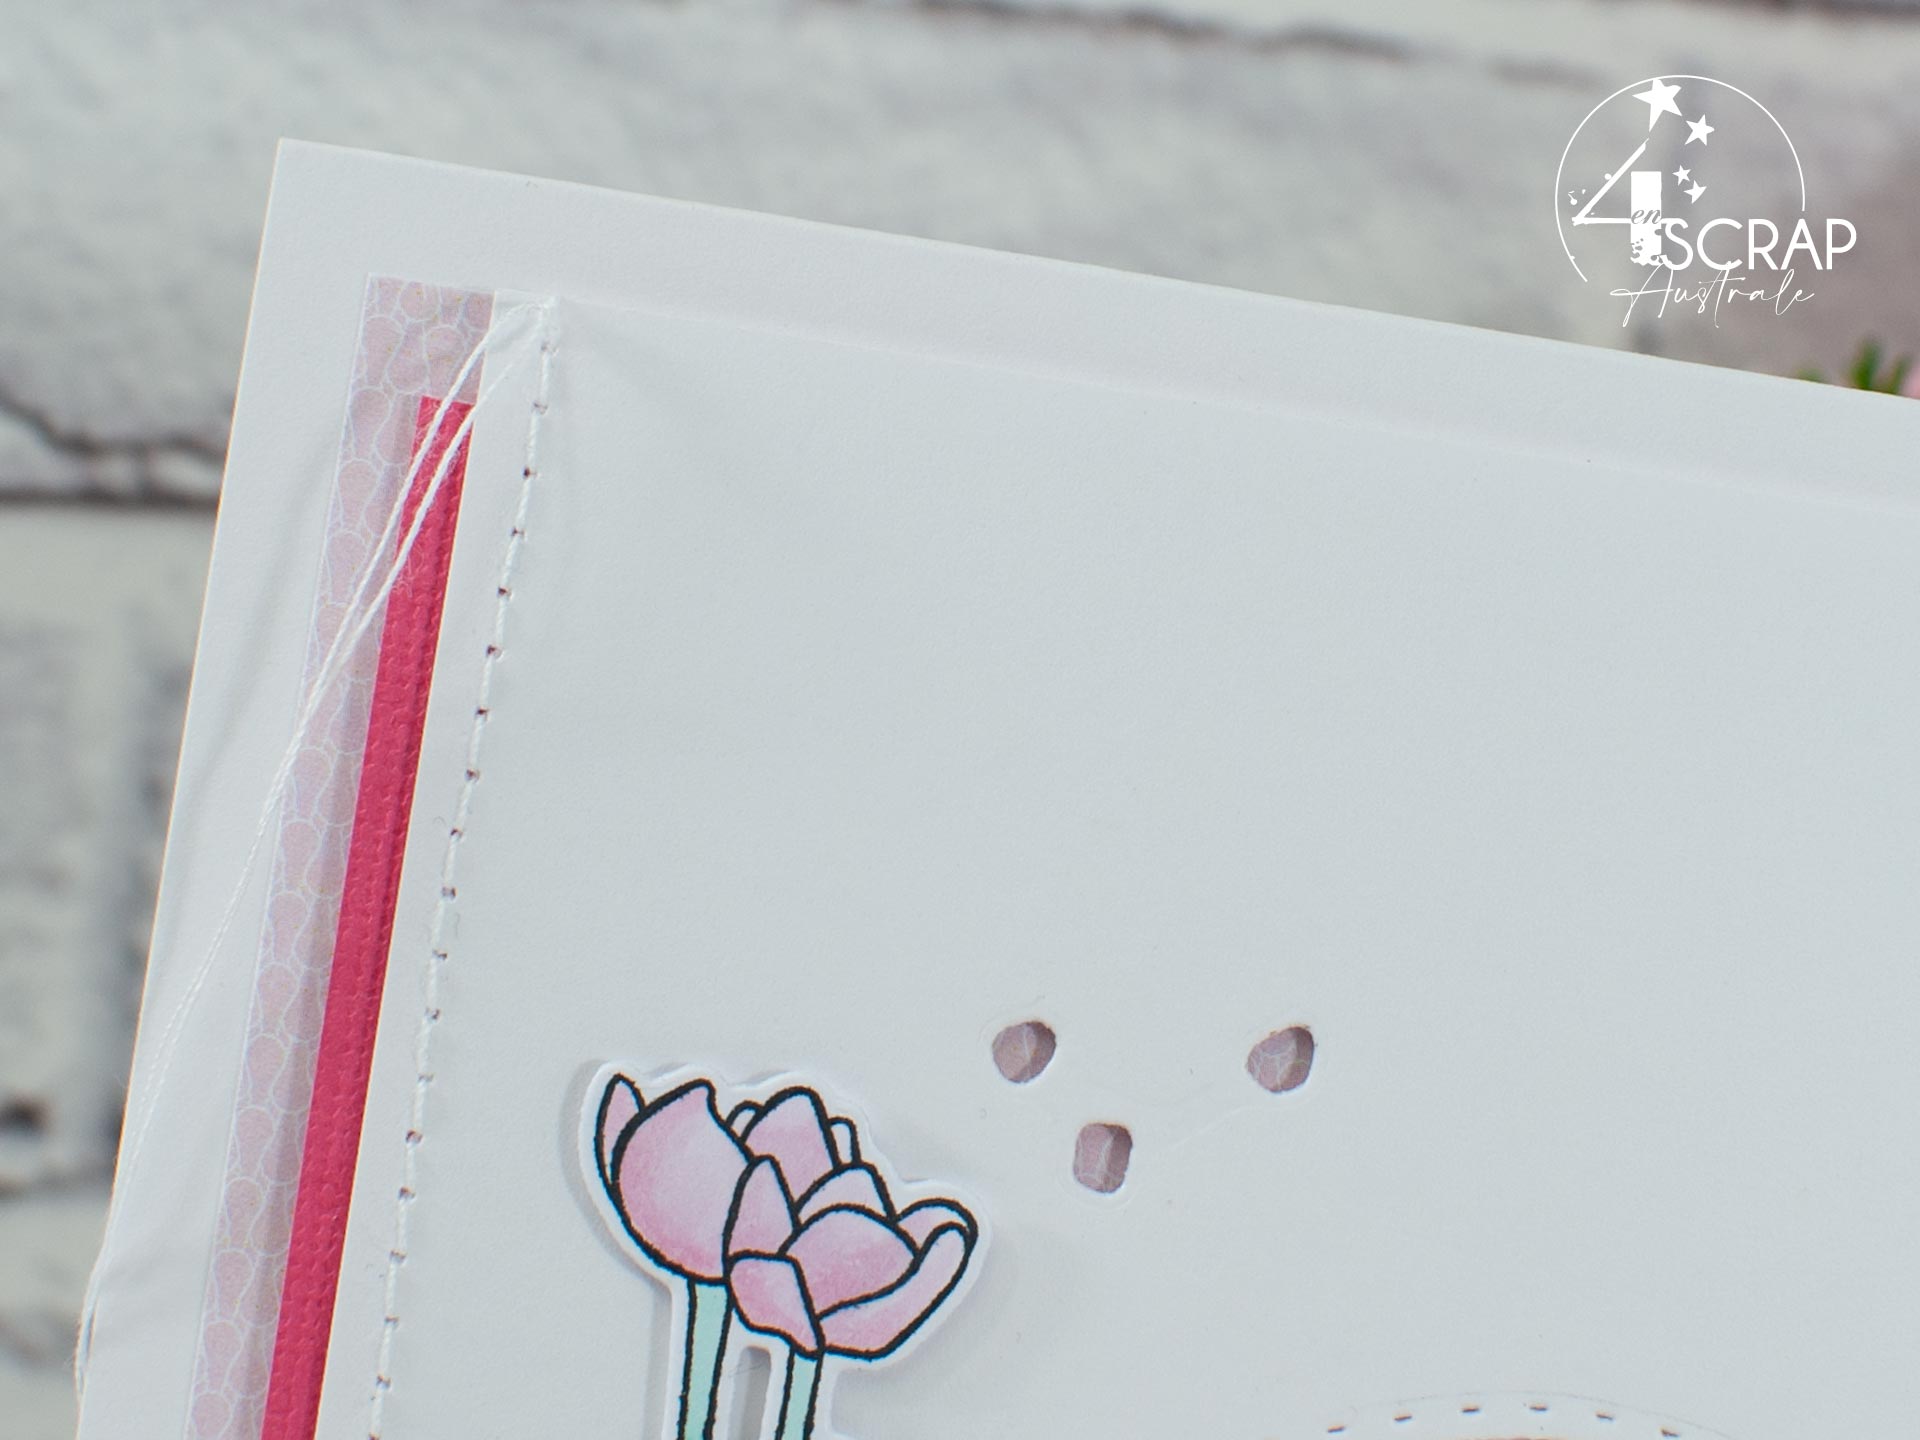 Création d'une carte pour la fête des mères avec un bouquet de tulipes, machine à écrire et quelques feuillages.